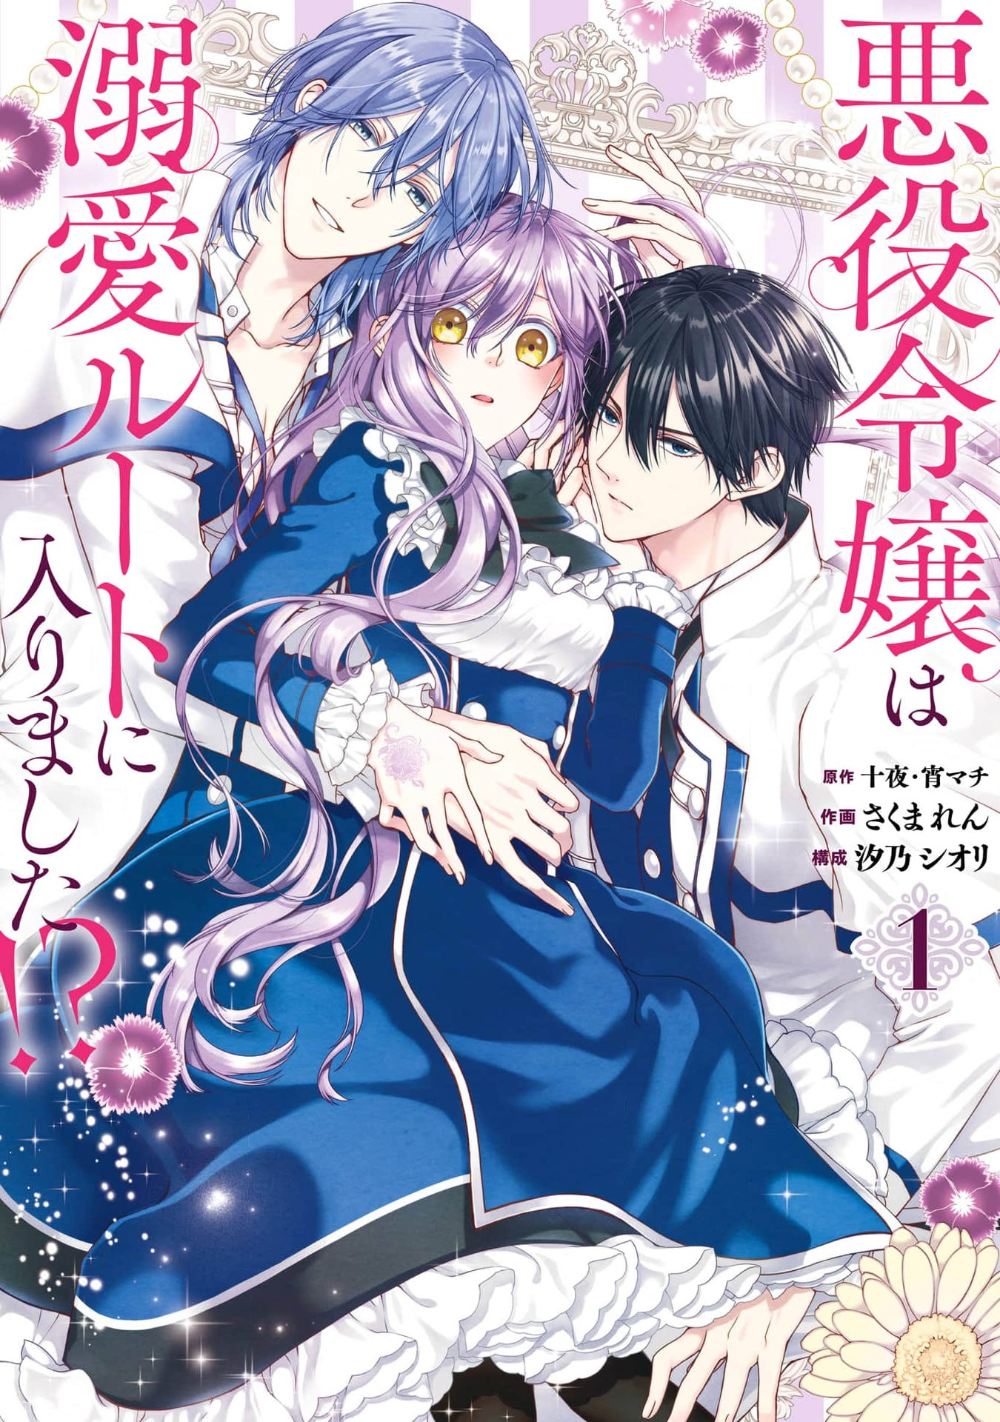 The Villainess’s Guide to (Not) Falling in Love (Manga) by Touya (Story), Ren Sakuma (Art), Yoimachi (Character Designs), Shiori Shiono (Adaption)